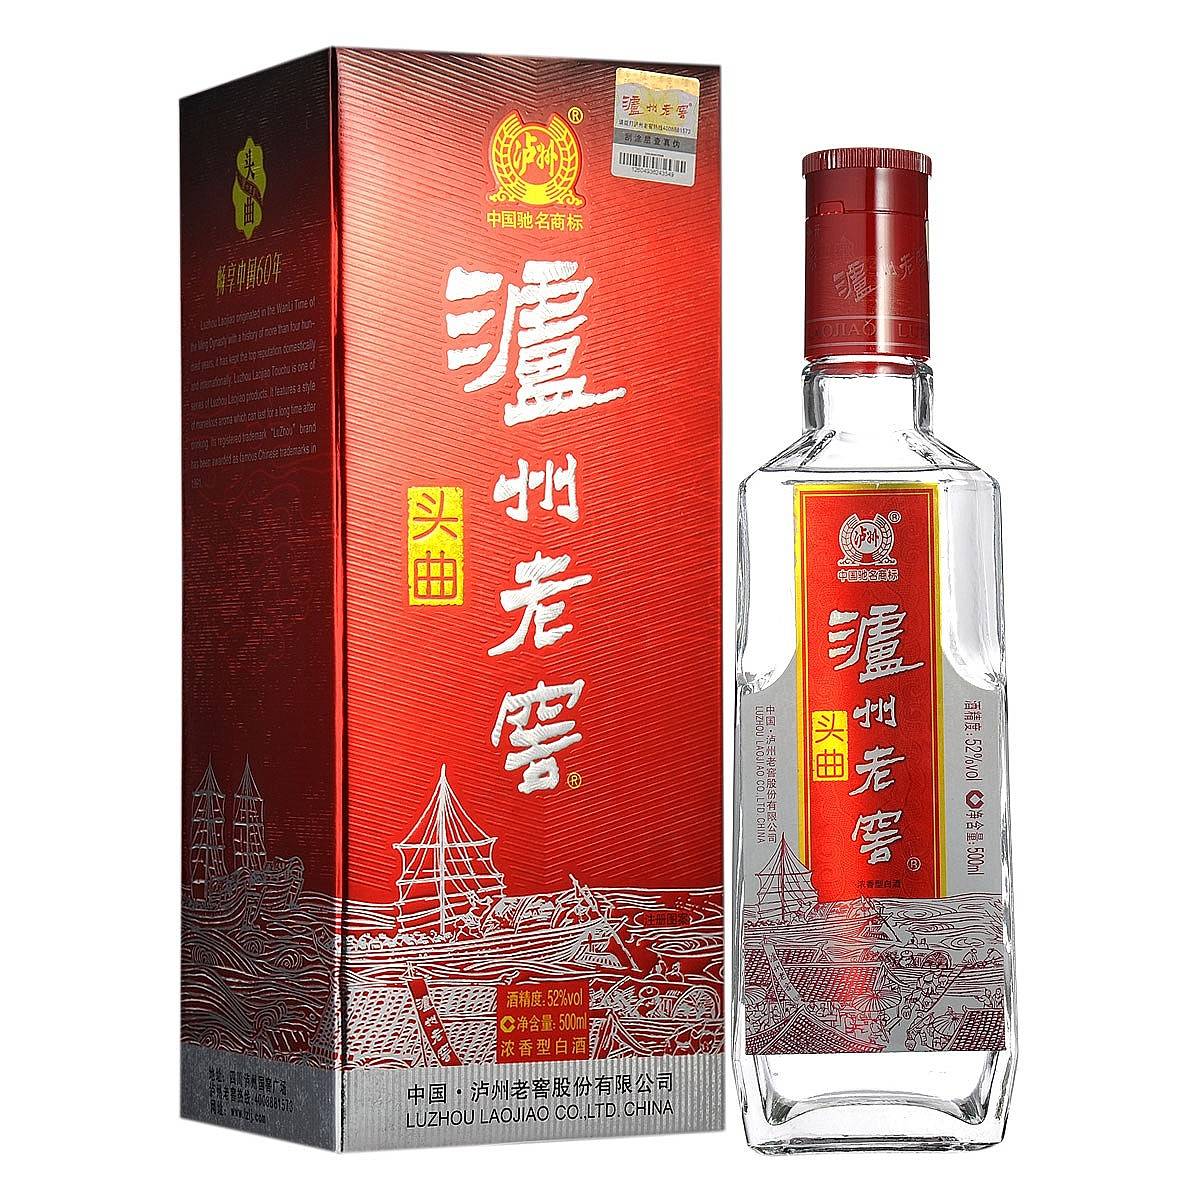 泸州老窖酒厂泸州老窖酒厂——中国传统酿酒文化的代表